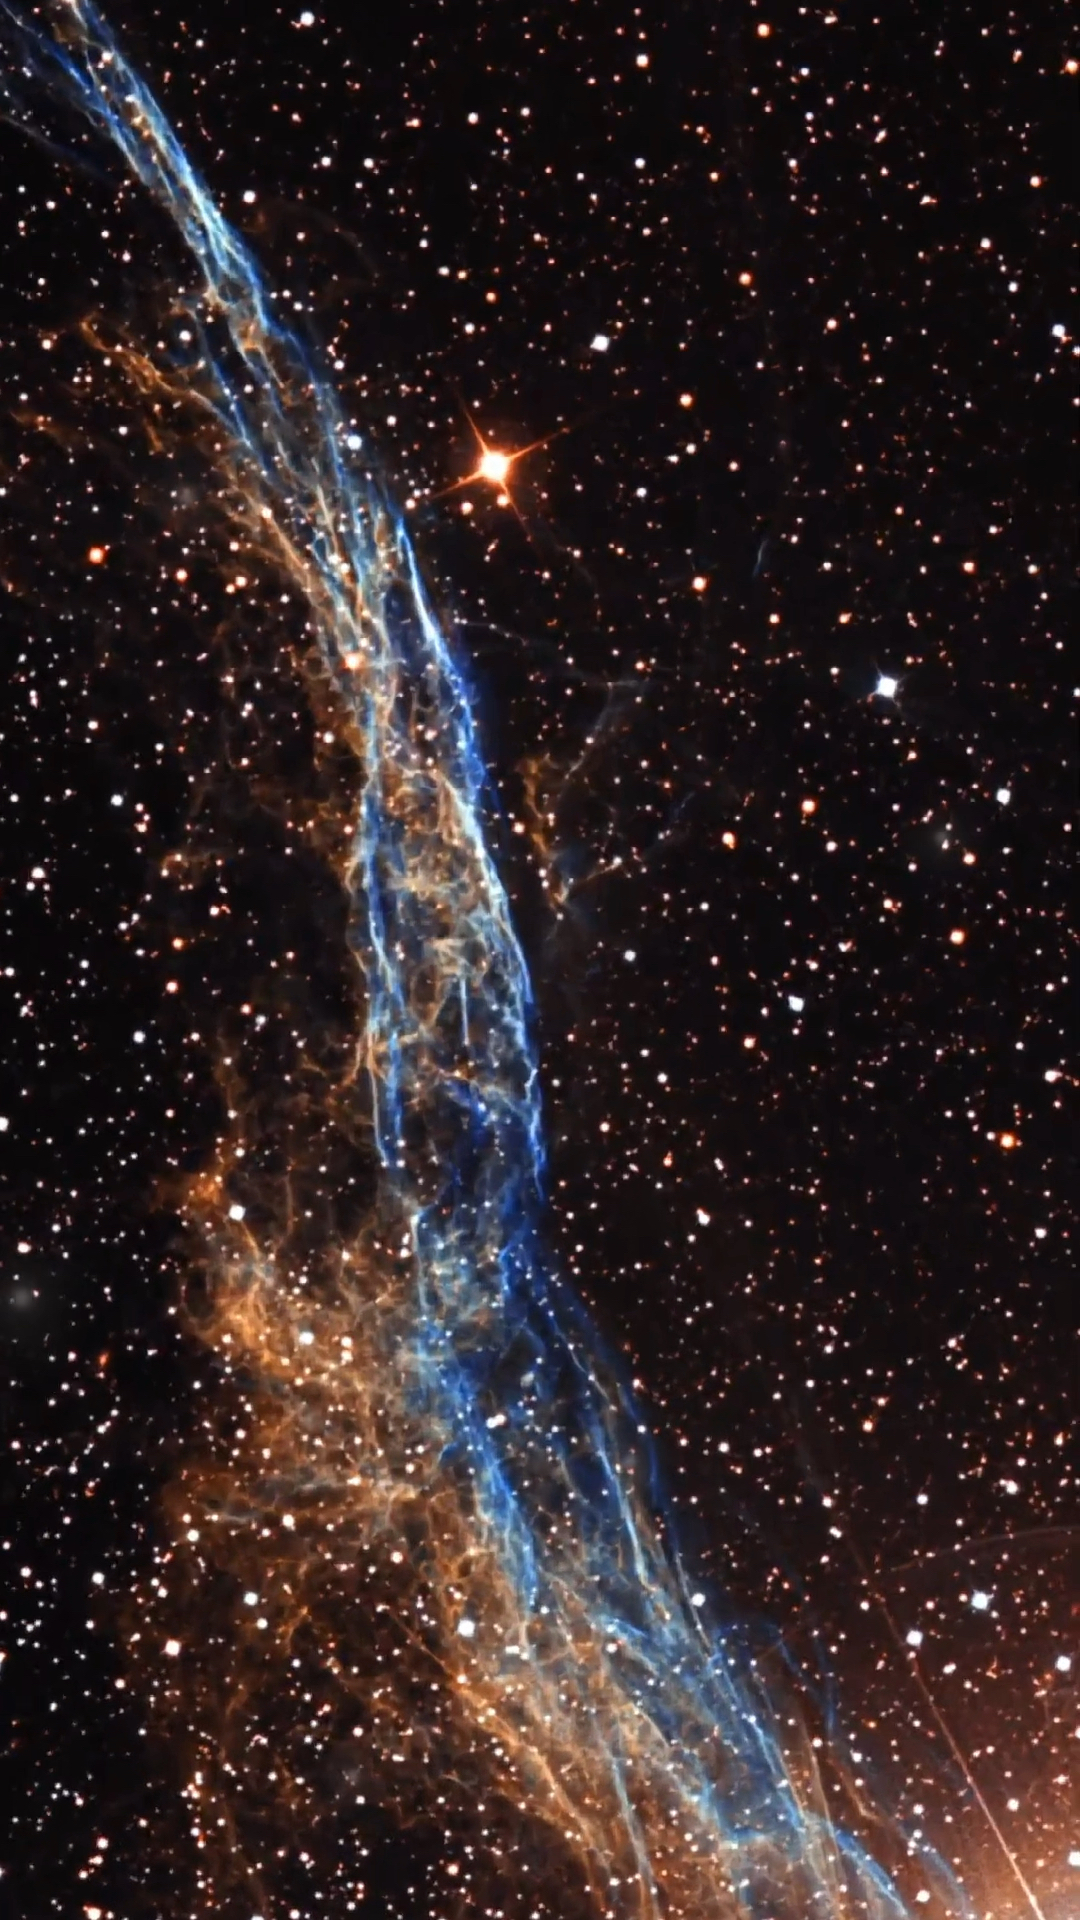 ngc6960 西面纱星云,是一颗大质量恒星5000年前爆炸死亡后留下的遗迹